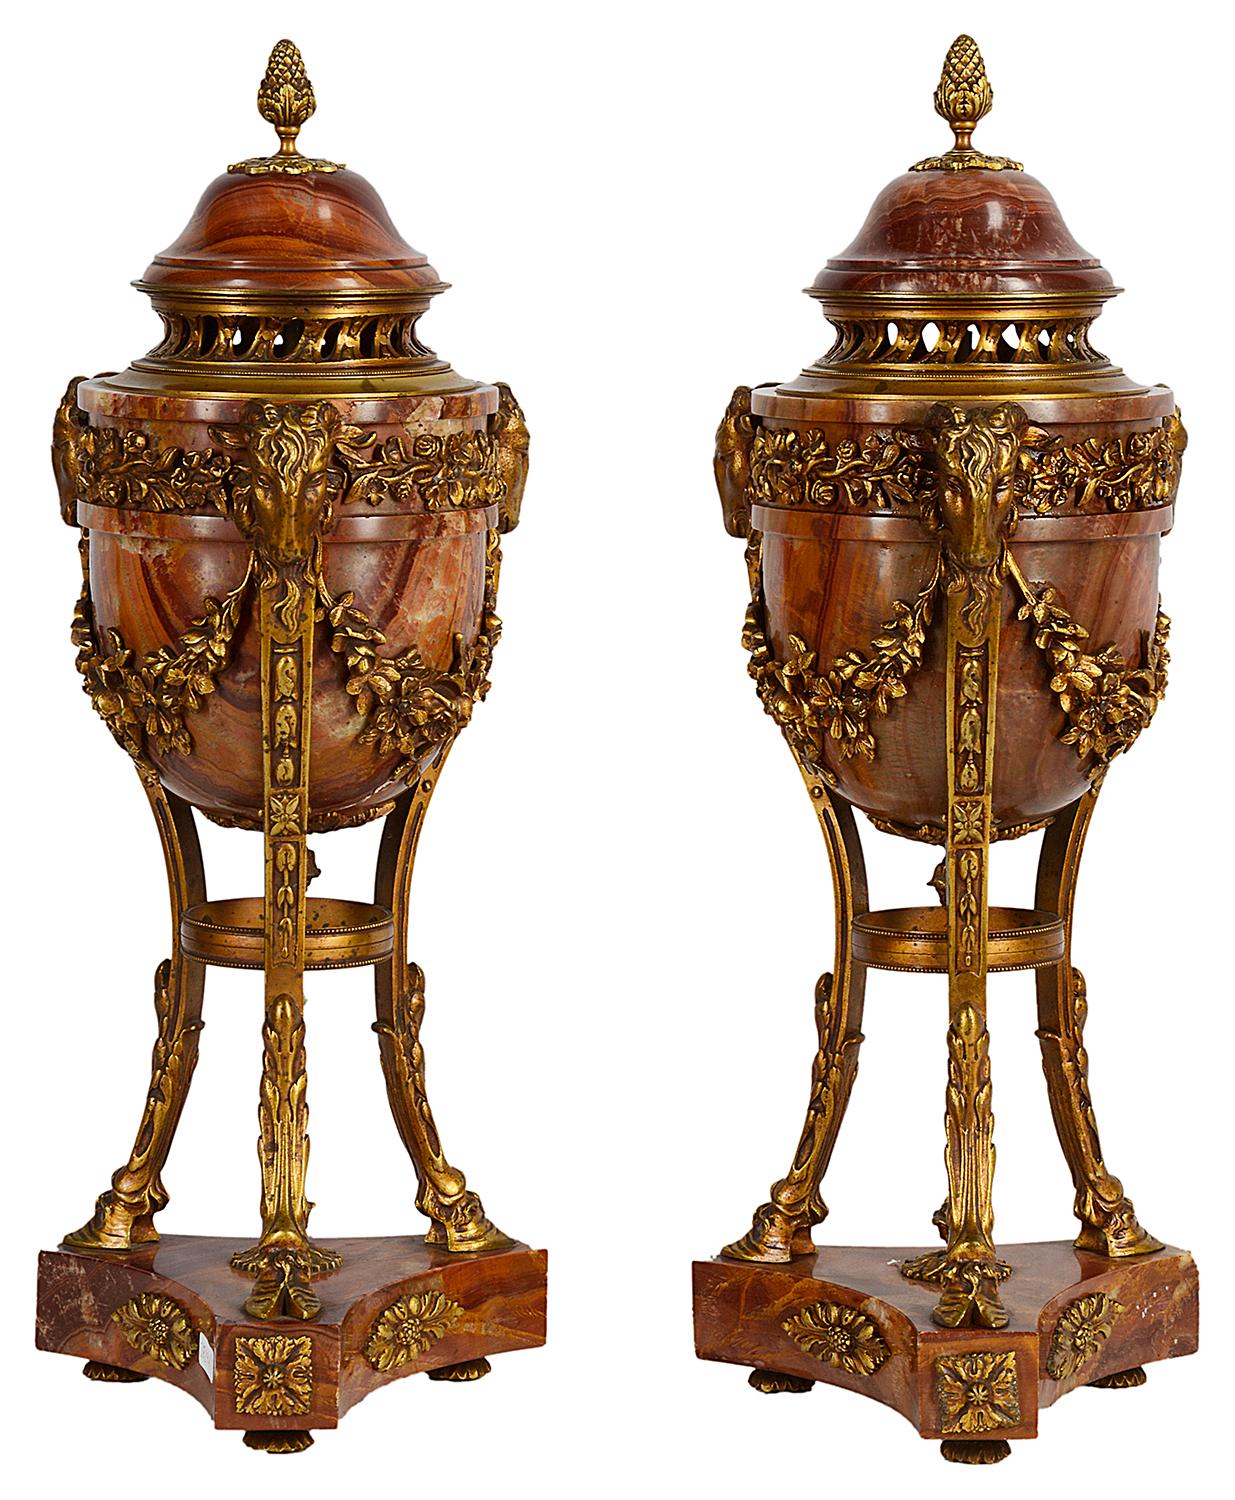 Paire d'urnes en marbre et bronze doré de bonne qualité, datant de la fin du XIXe siècle, chacune avec des montures classiques en forme de tête de Rans, soutenues par trois supports évasés, se terminant par des pieds en forme de sabots et reposant